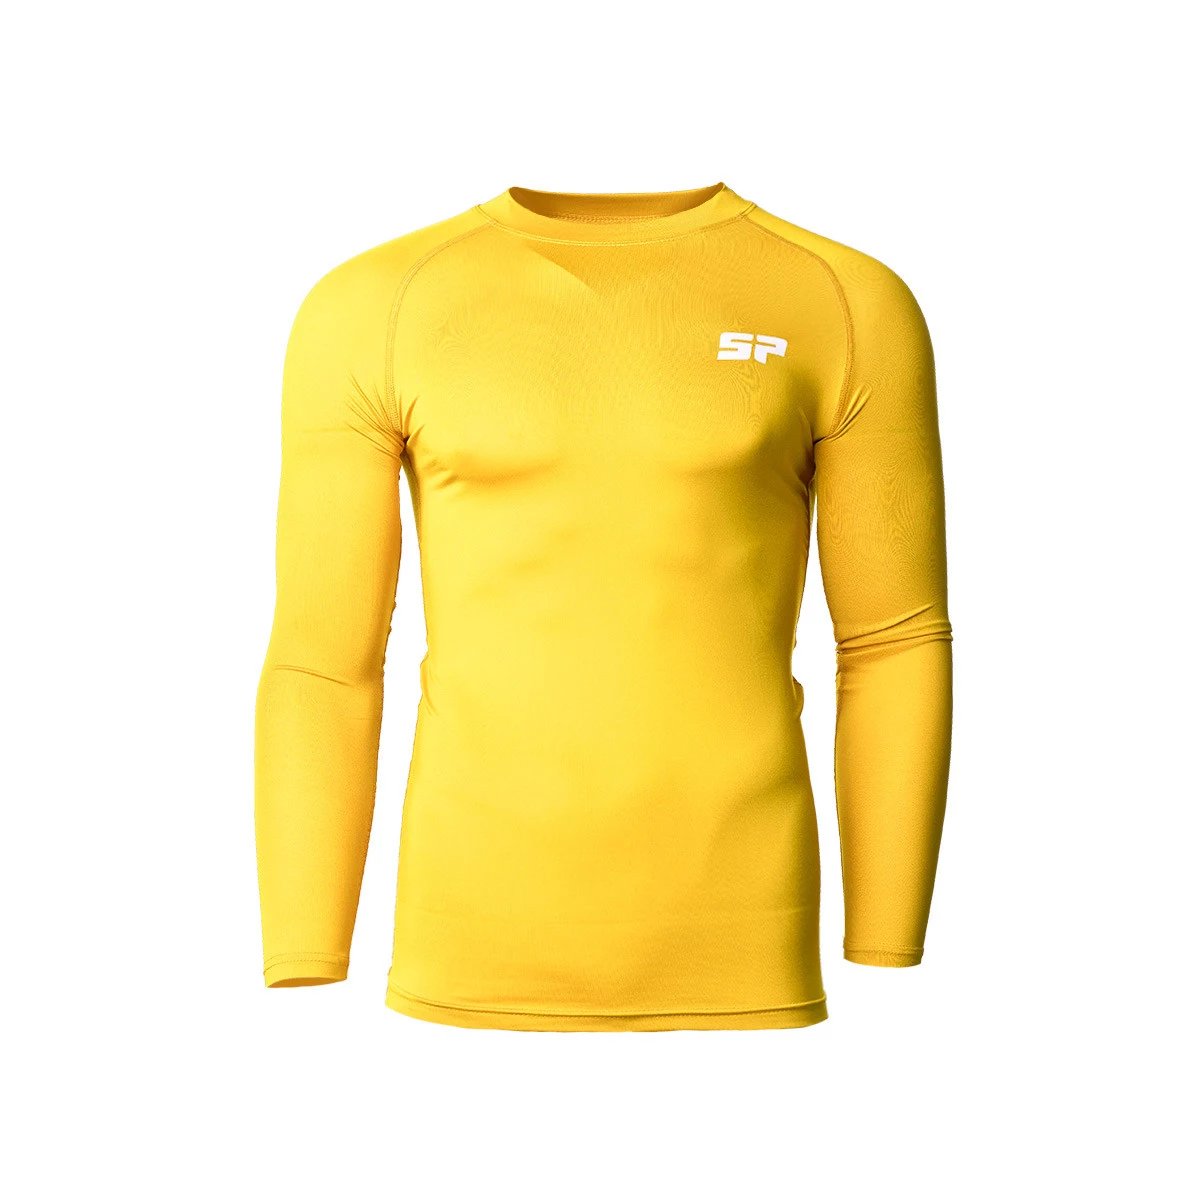 Camiseta básica de manga larga amarilla con logo Polo Club – Polo Club  Europe